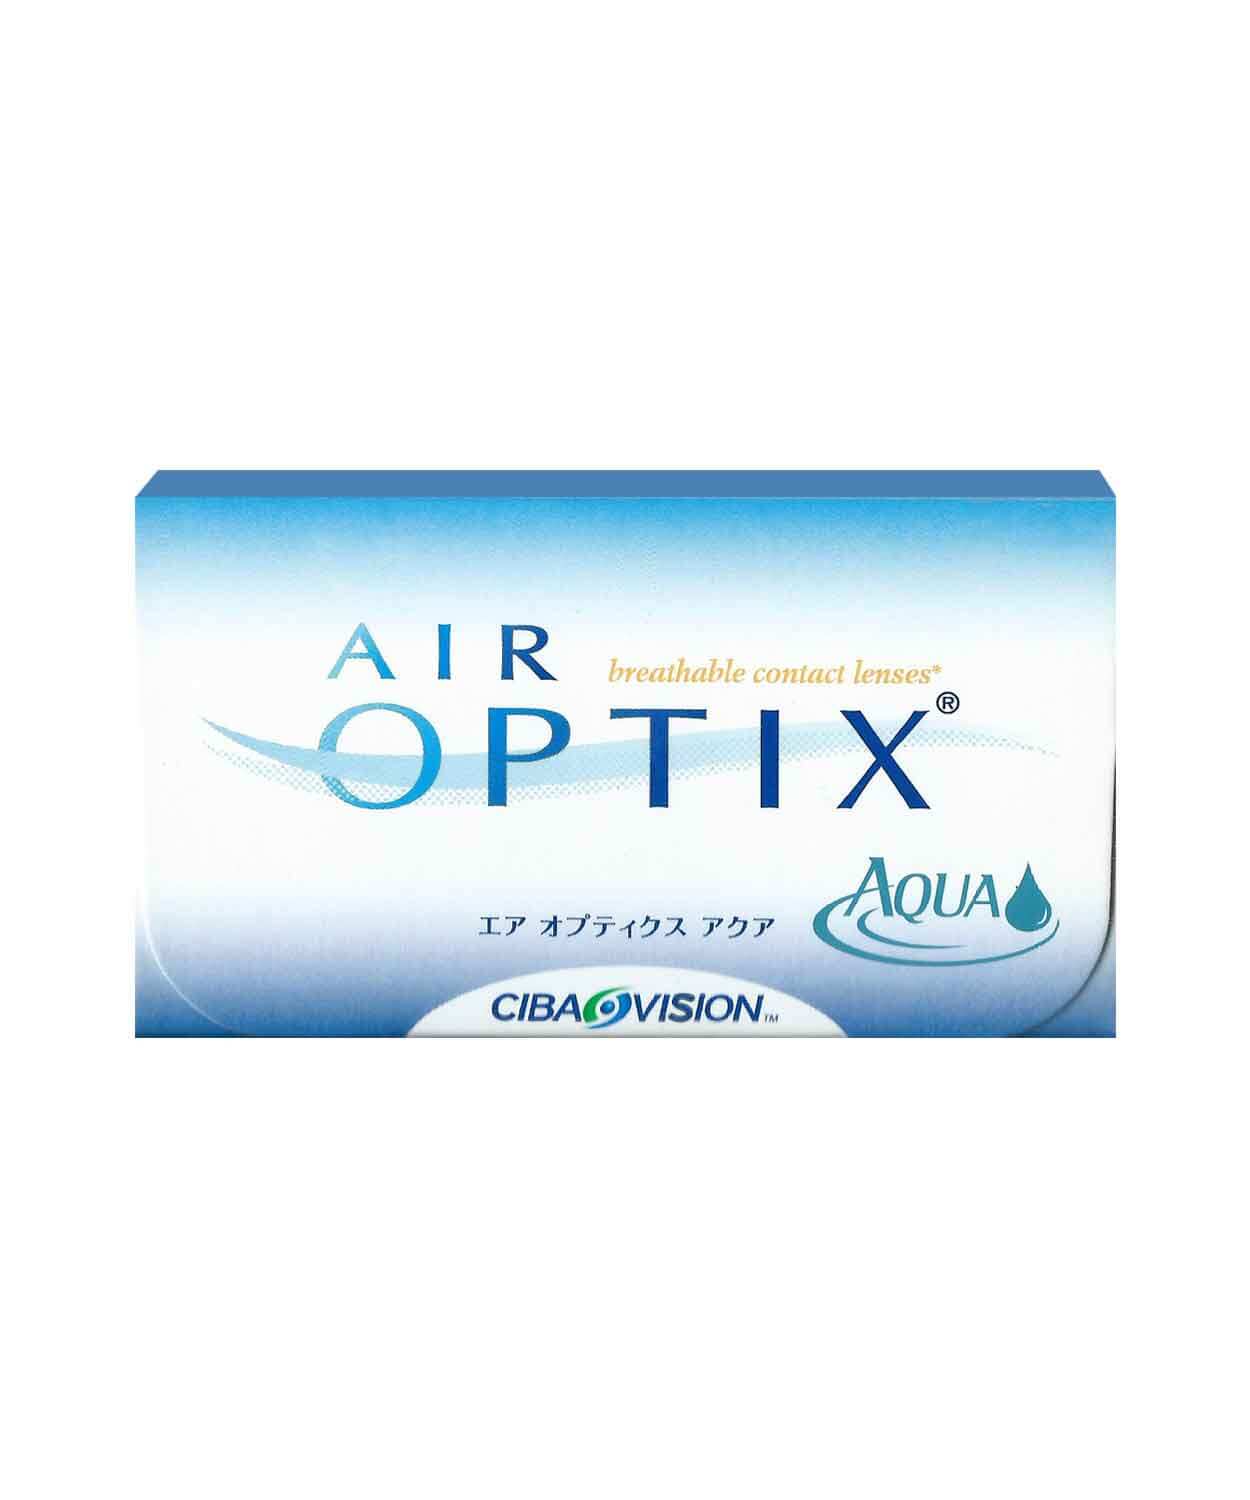 air-optix-contact-lens-malaysia